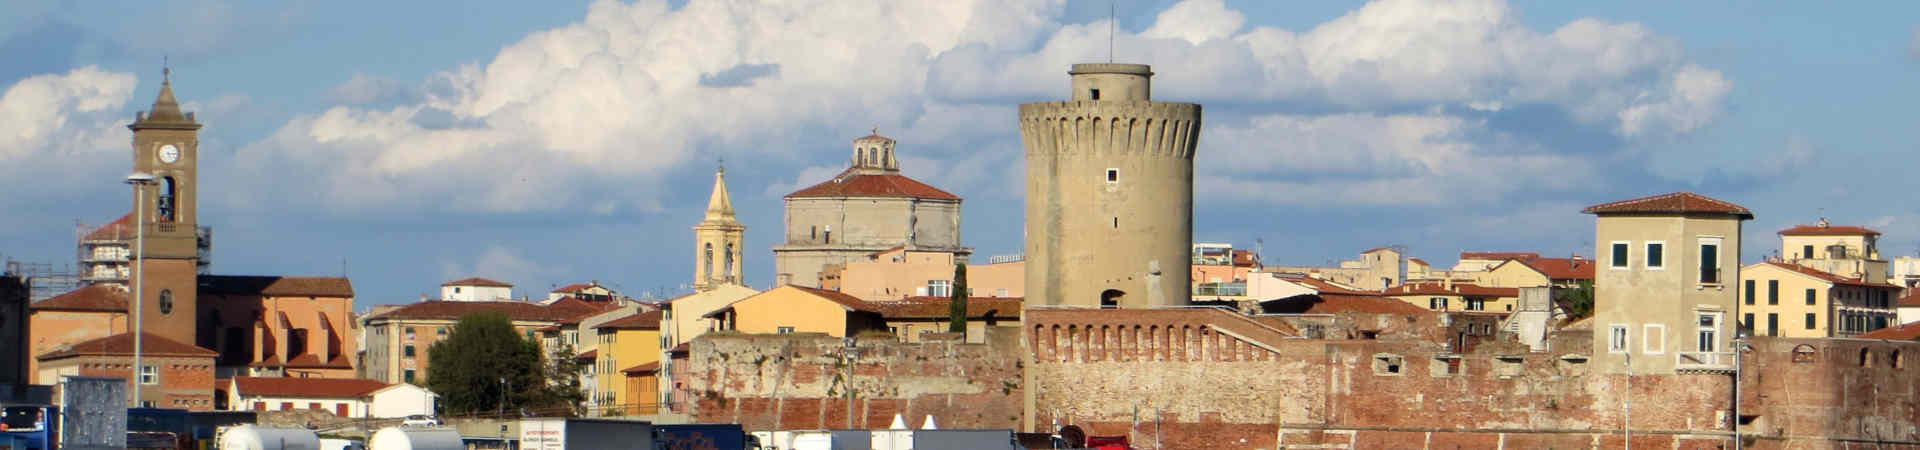 Immagine del porto di arrivo Livorno per la rotta traghetto Palermo (Città) - Livorno